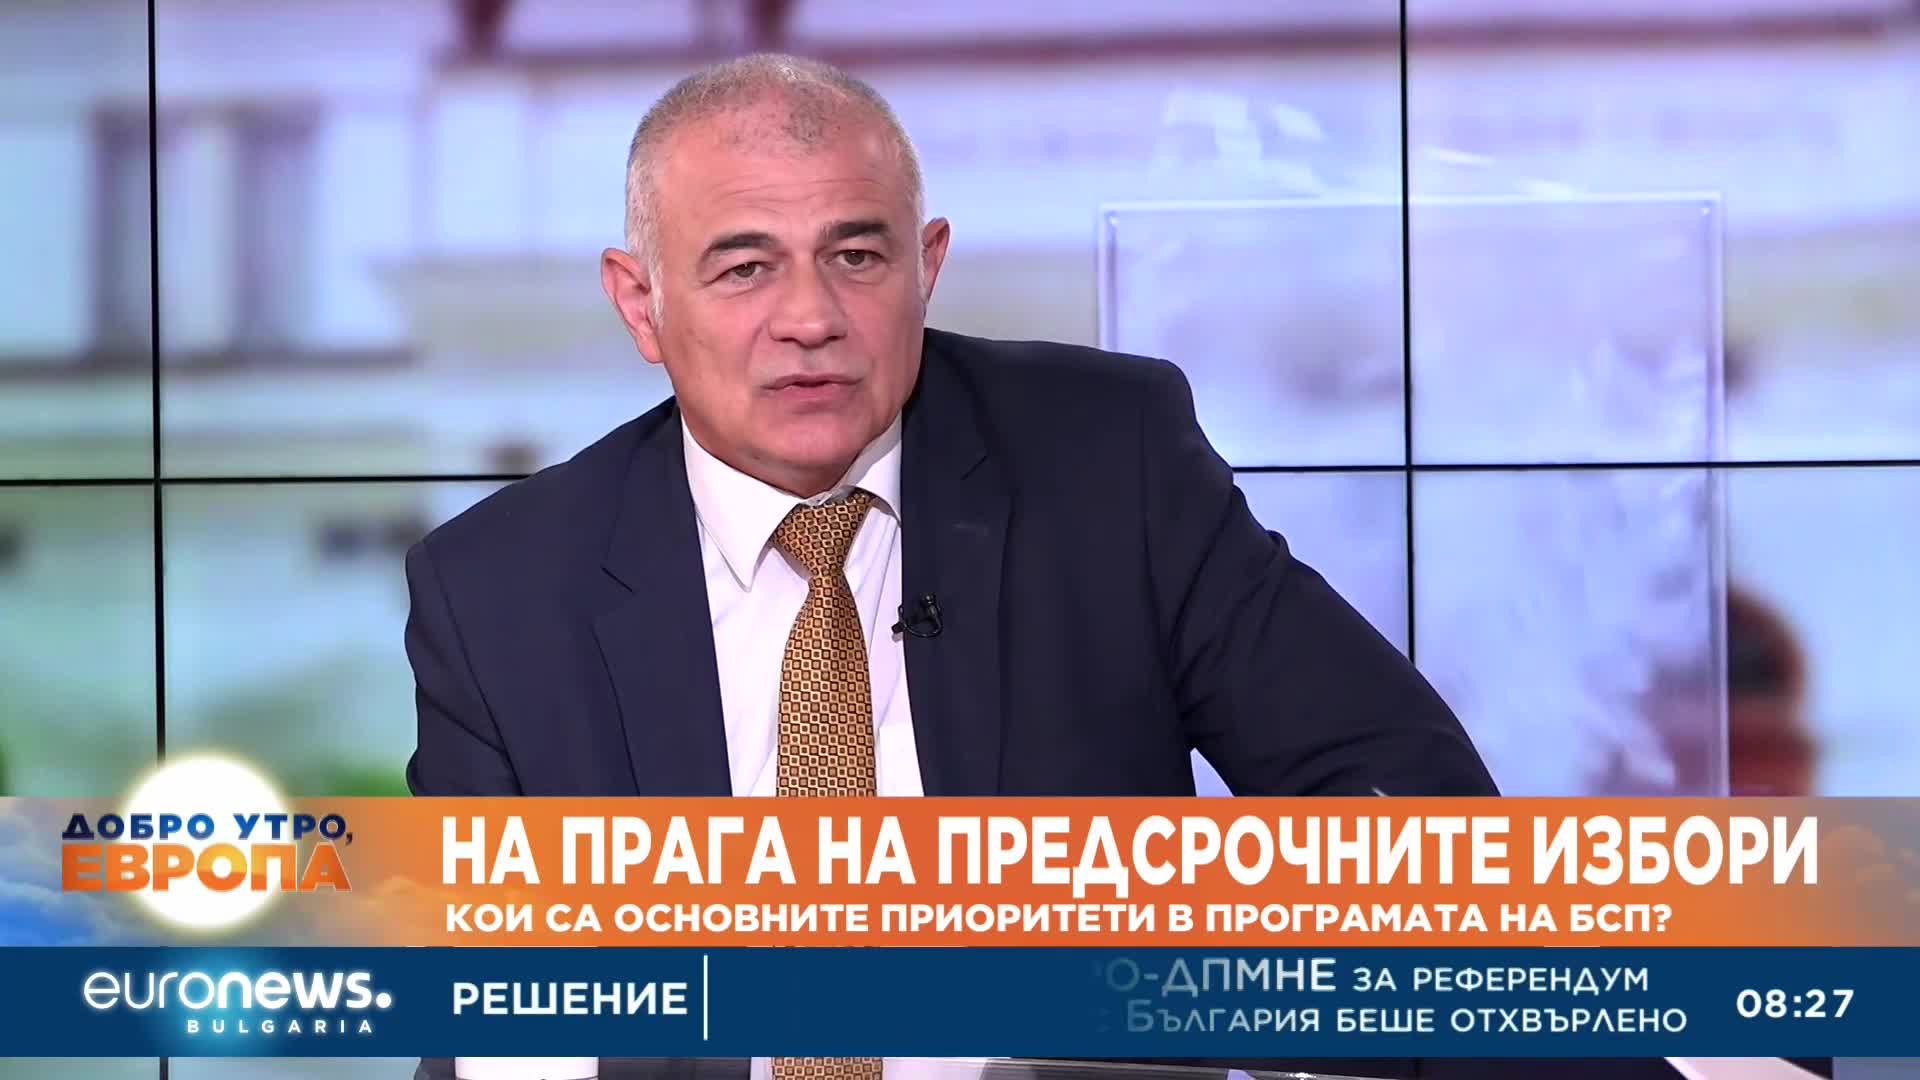 Георги Гьоков, БСП: Бихме върнали руските дипломати в името на добрите отношения